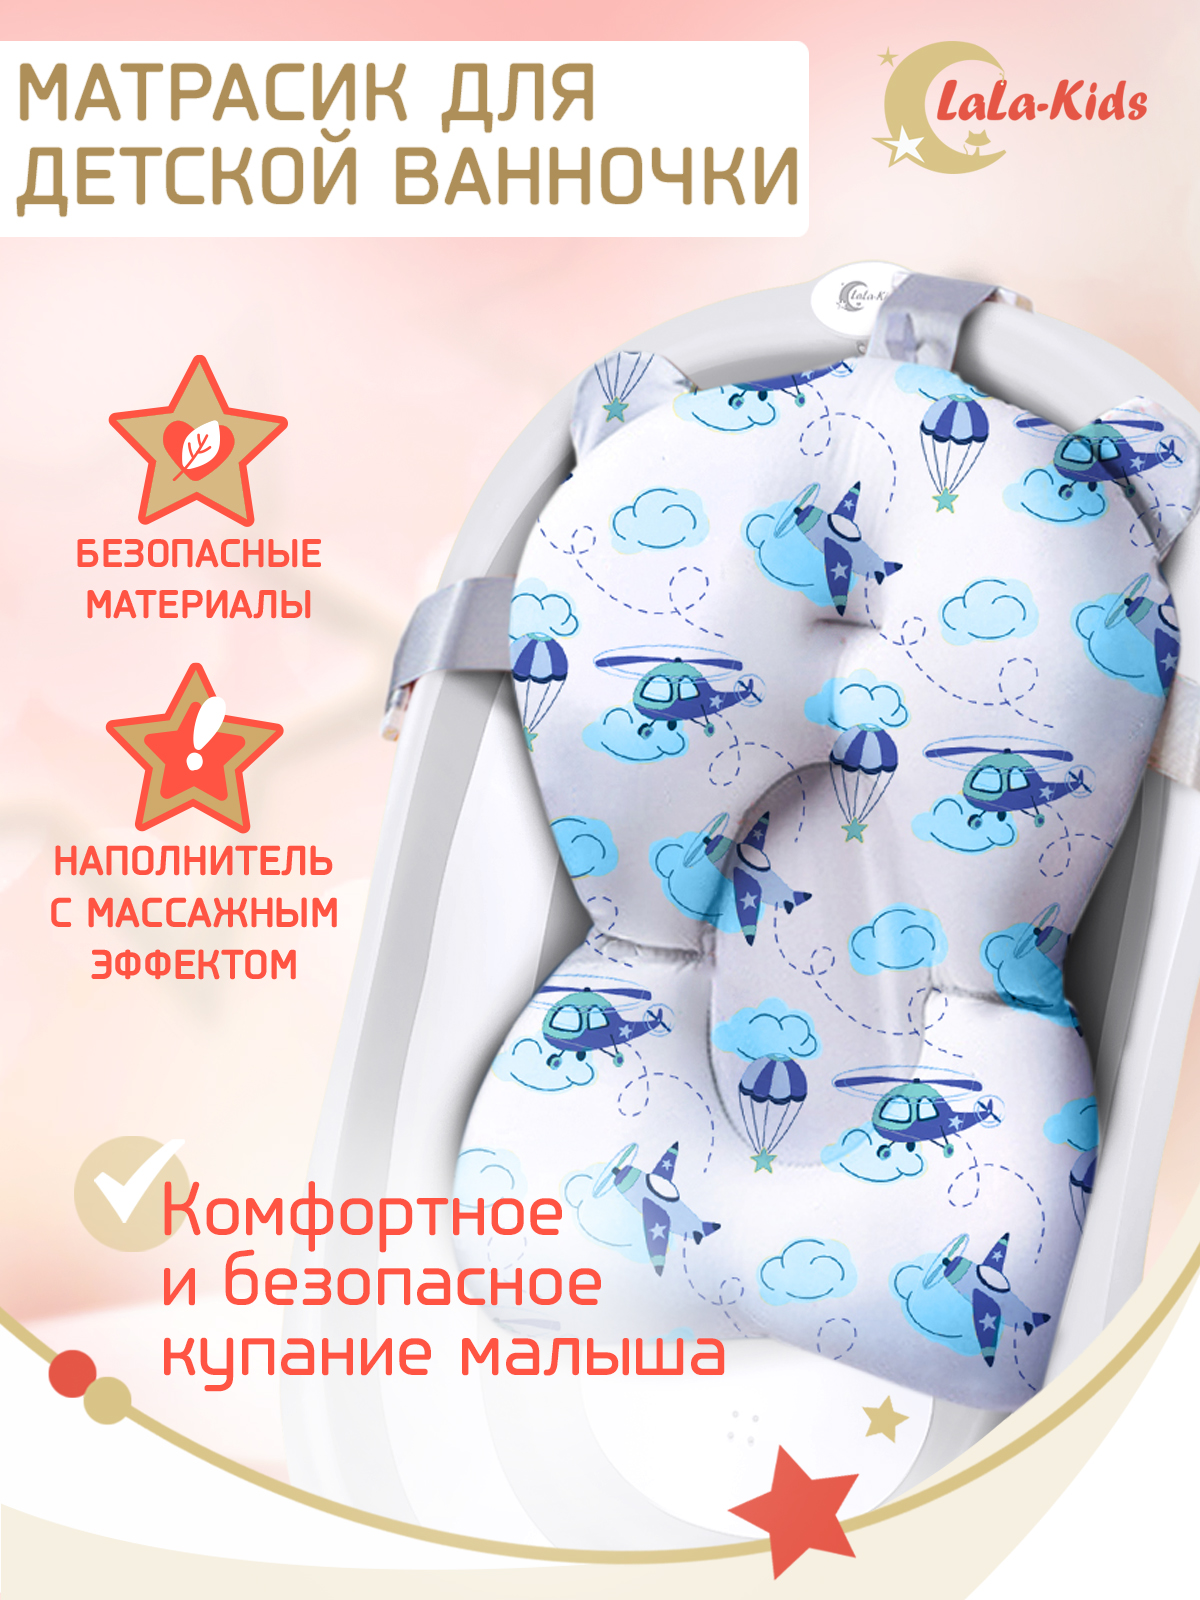 Матрас LaLa-Kids для купания новорожденных - фото 2